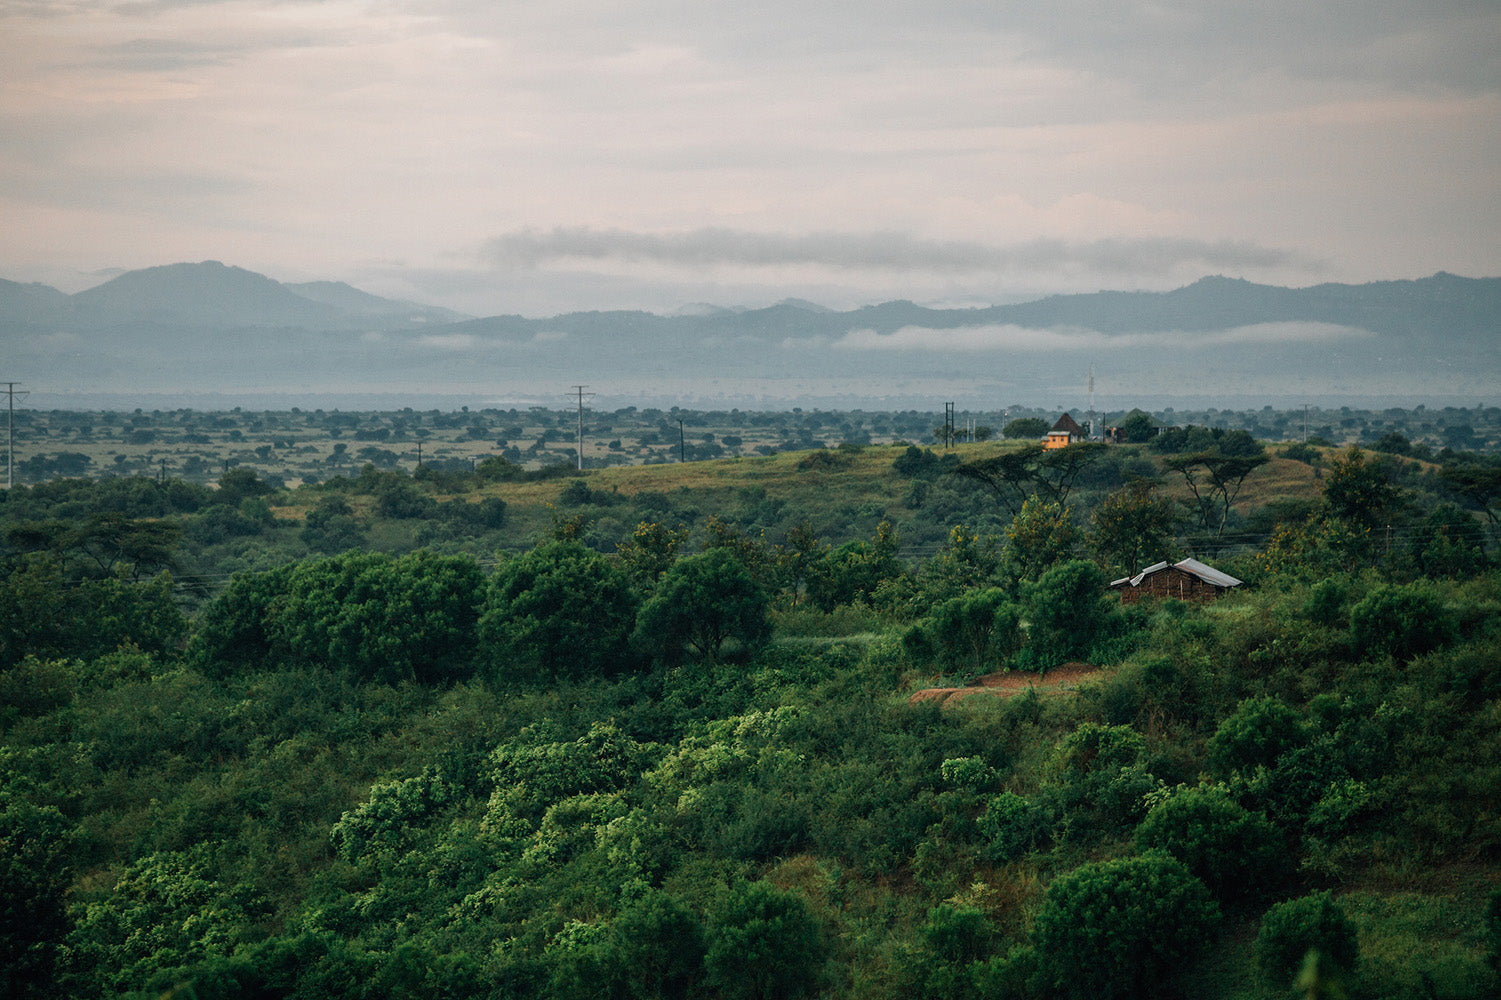 Ugandan countryside